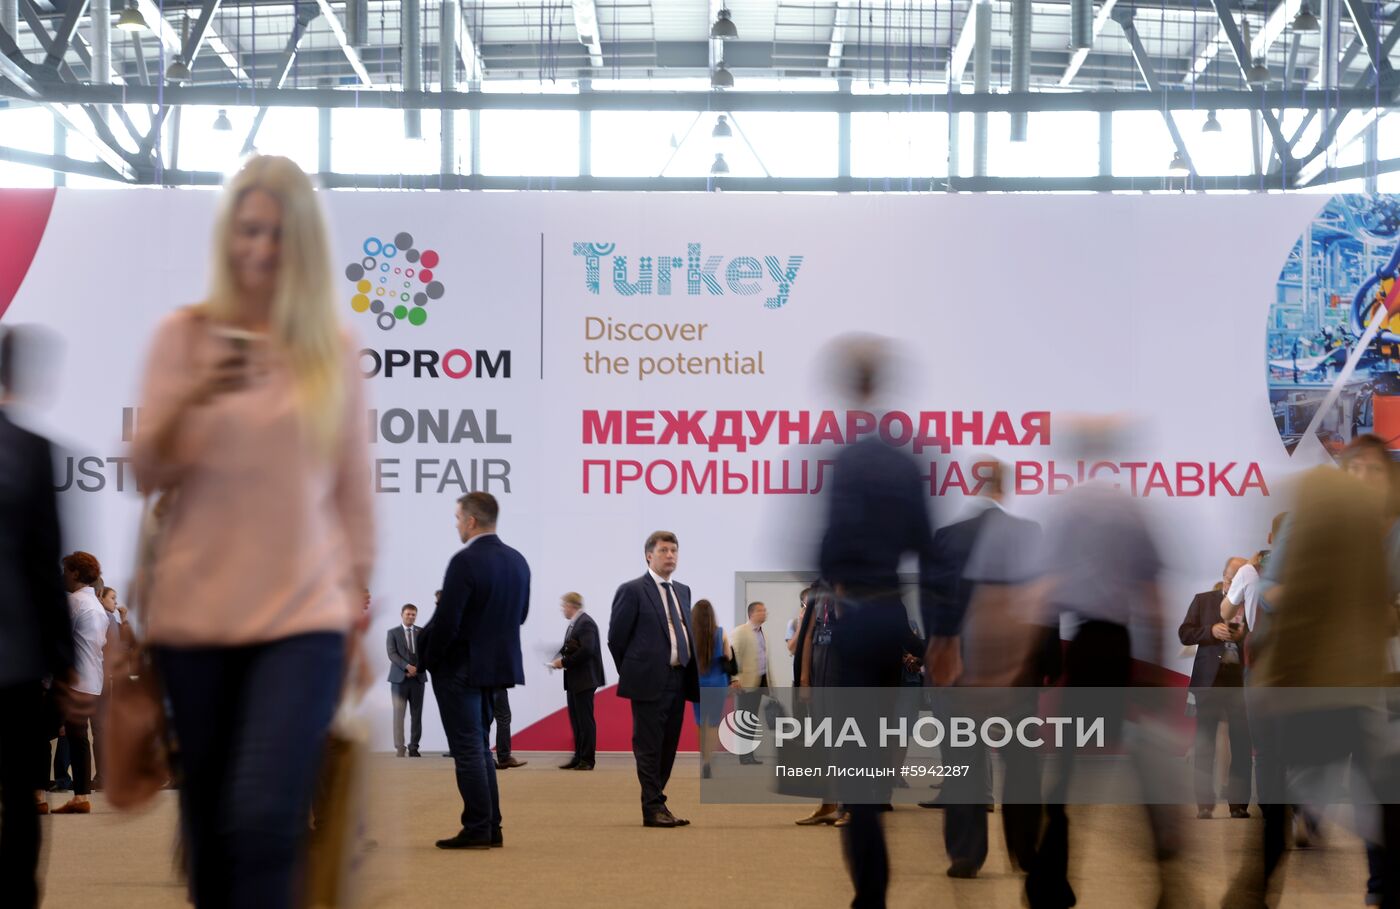 Международная промышленная выставка "ИННОПРОМ-2019"